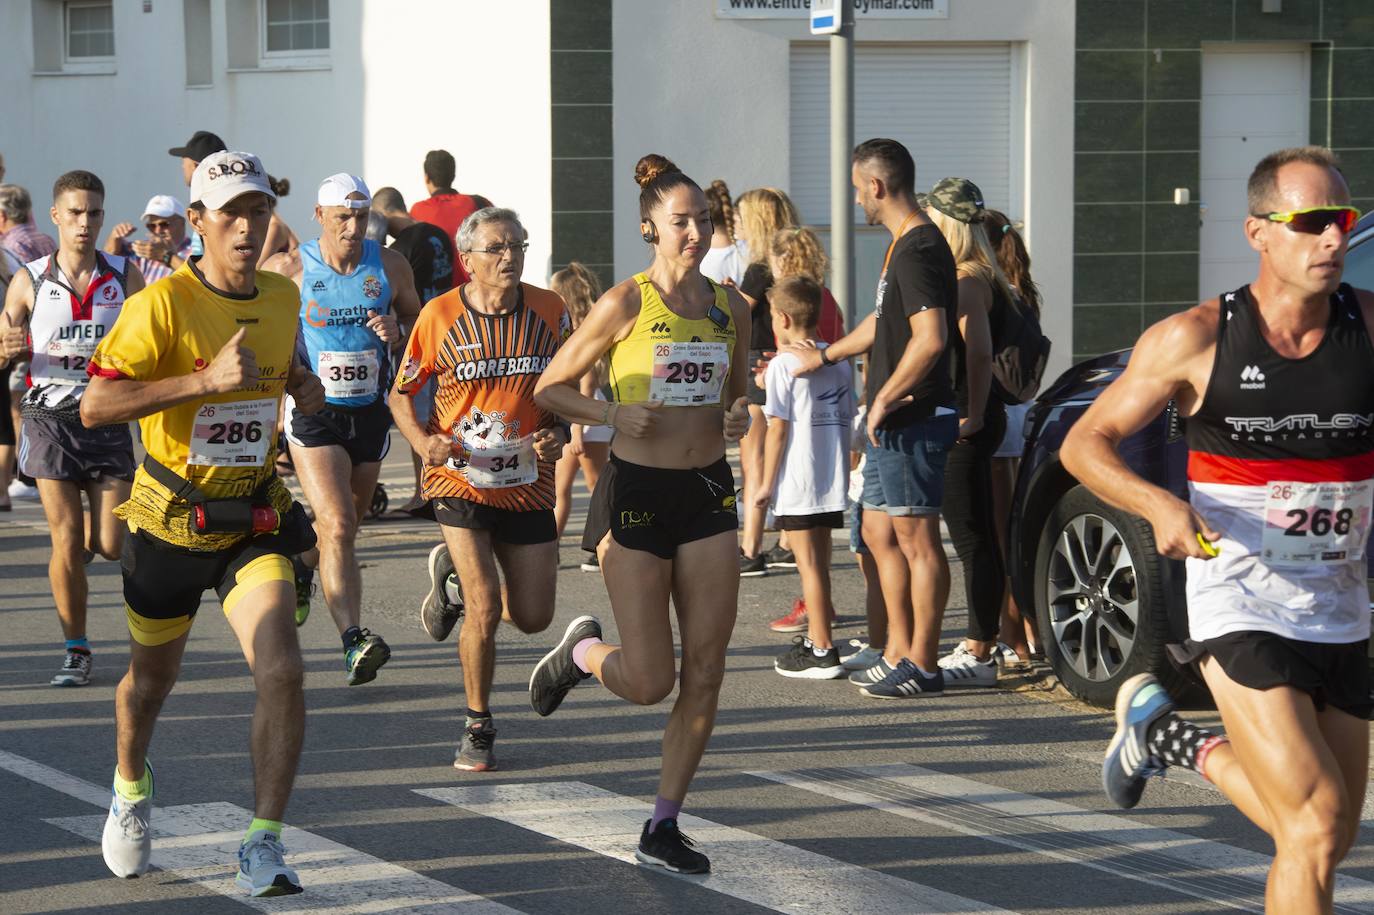 El atleta del Mobel Automenor Running Team se lleva el triunfo con un tiempo de 35:10 minutos en los 10 kilómetros, por los 44:43 para su compañera de club que gana en la prueba femenina